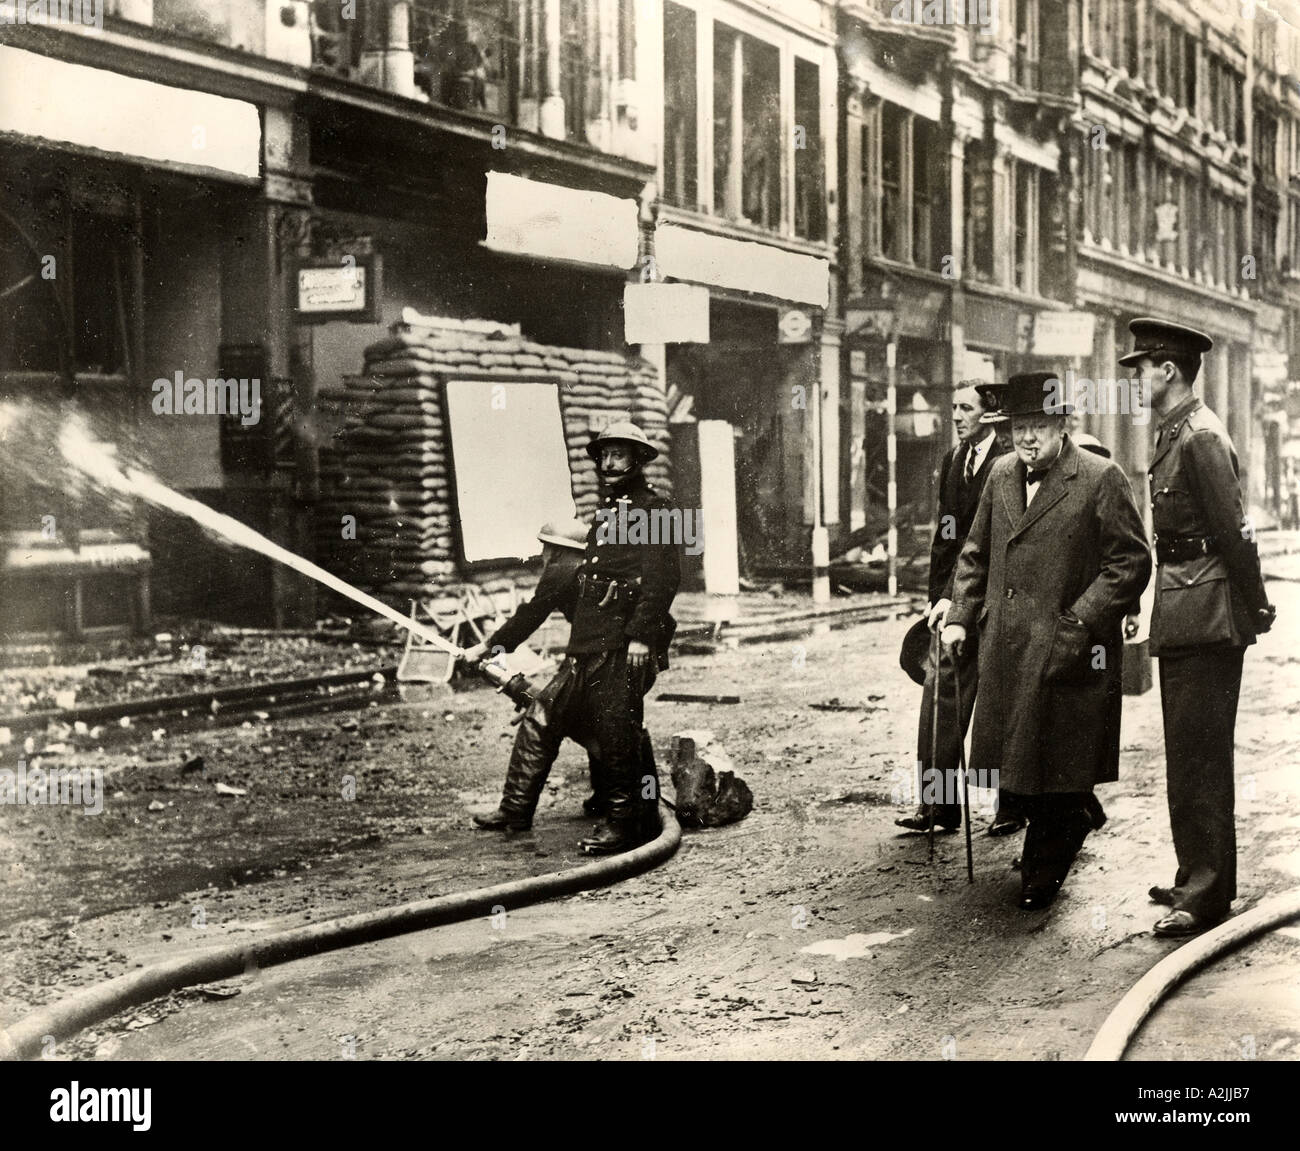 WINSTON CHURCHILL inspecte les dommages causés par les bombes à Ludgate Hill, Londres, après un raid aérien allemand en octobre 1940. Voir la description ci-dessous. Banque D'Images